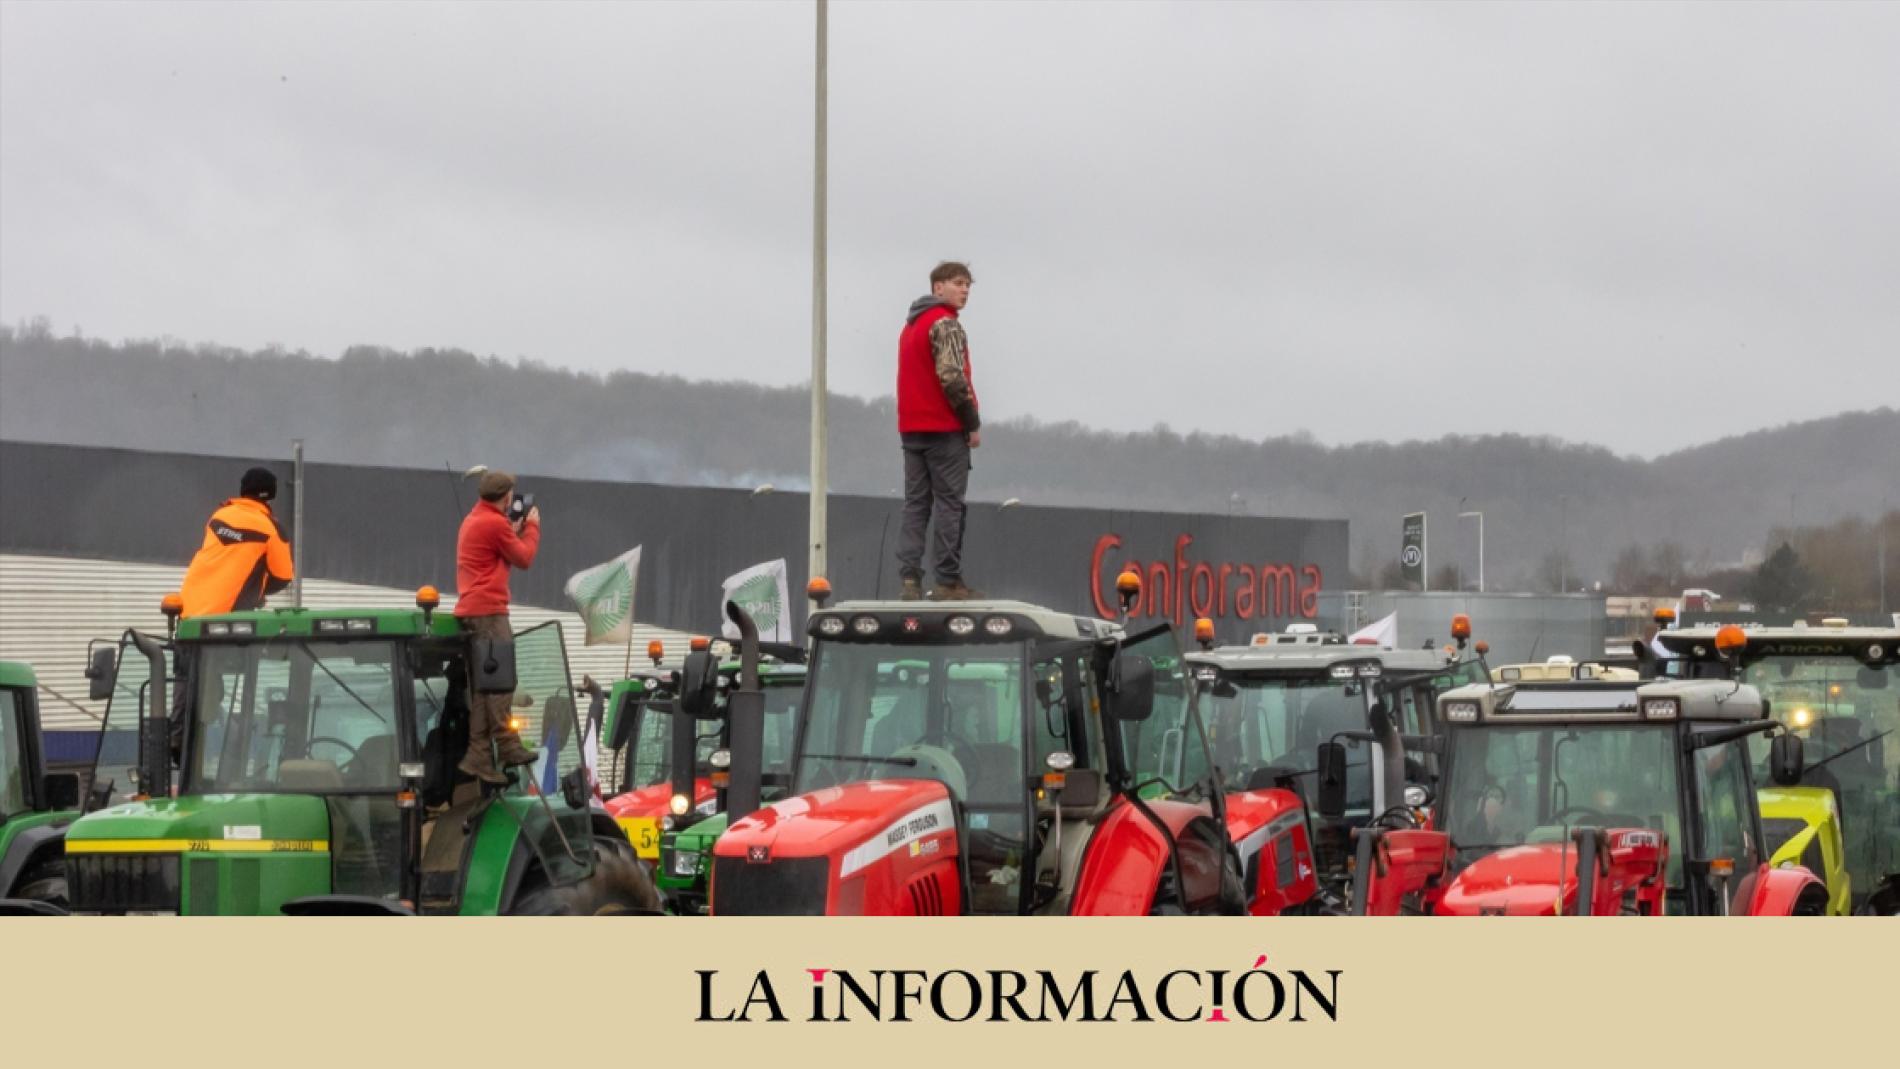 Le conflit avec les agriculteurs déclenche une crise politique entre la France et l’Espagne